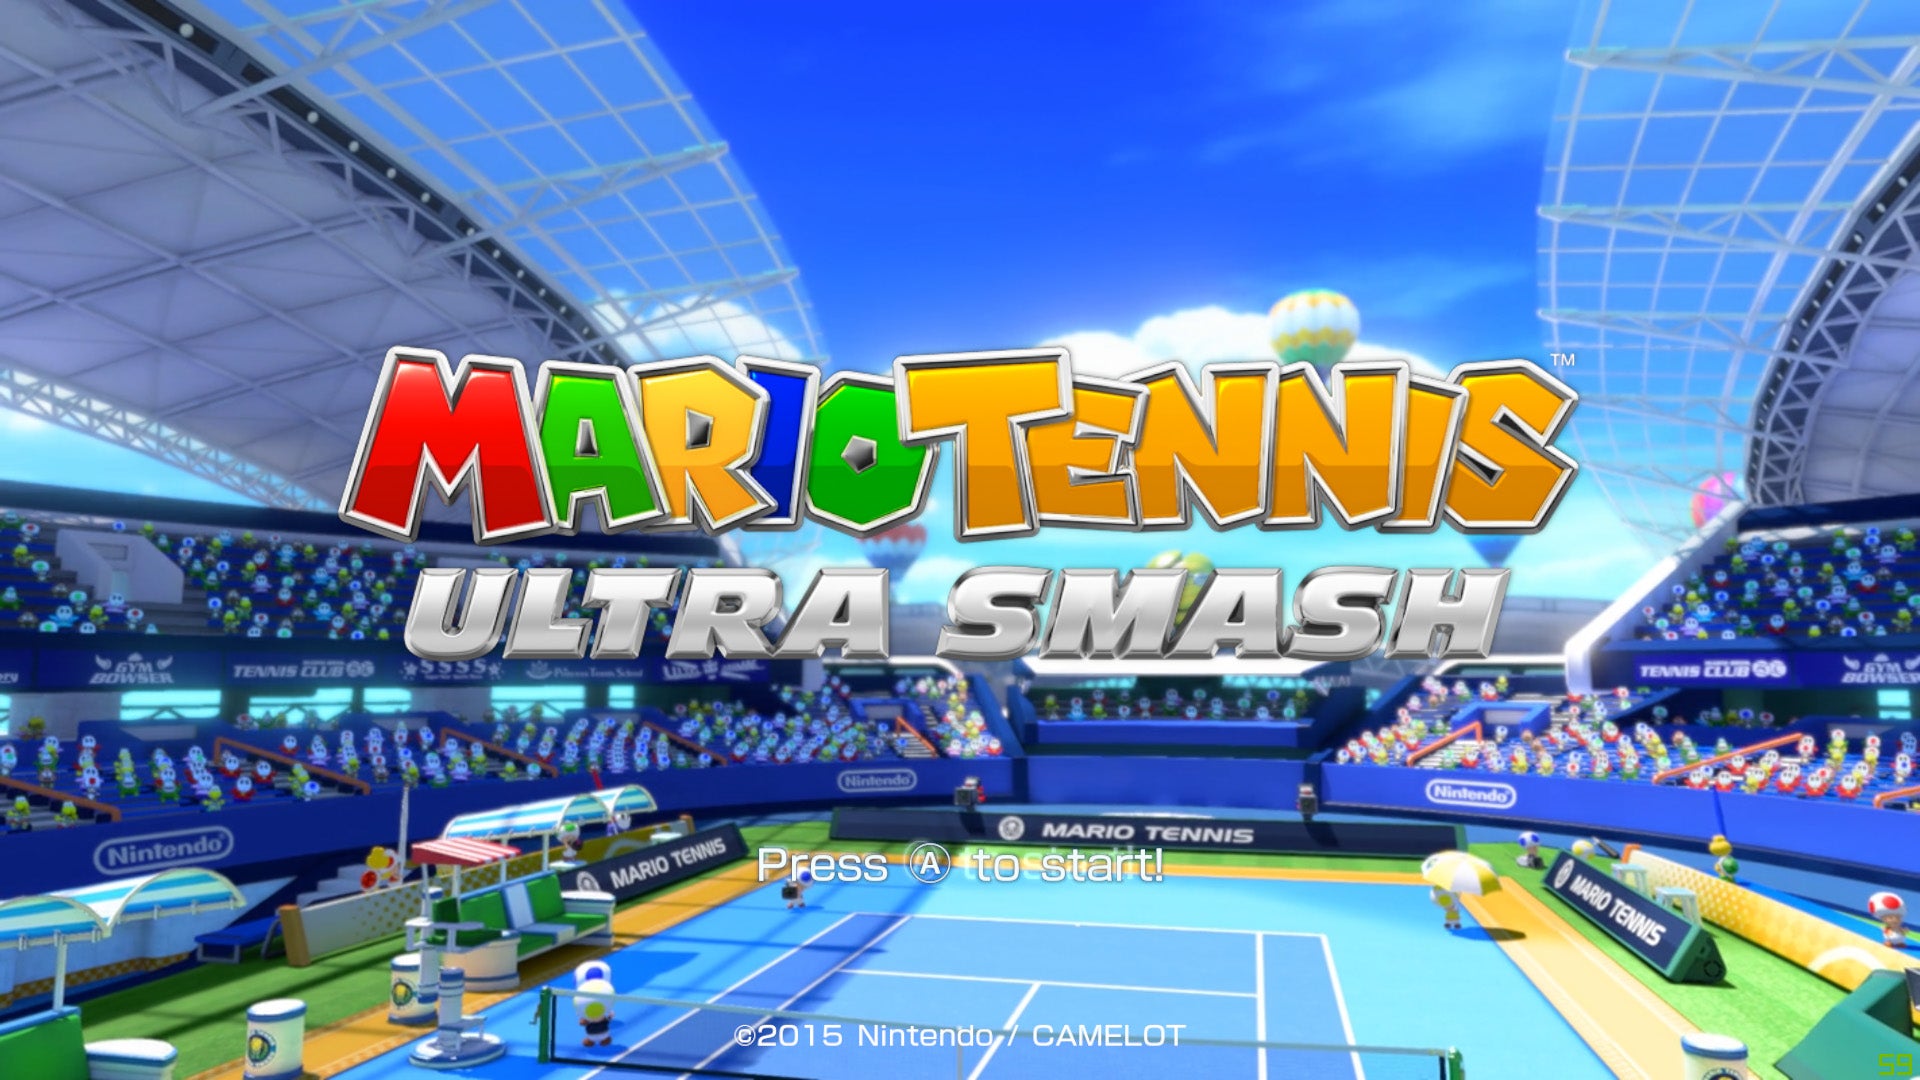 Mario Tennis: Ultra Smash - Nintendo Wii U Game